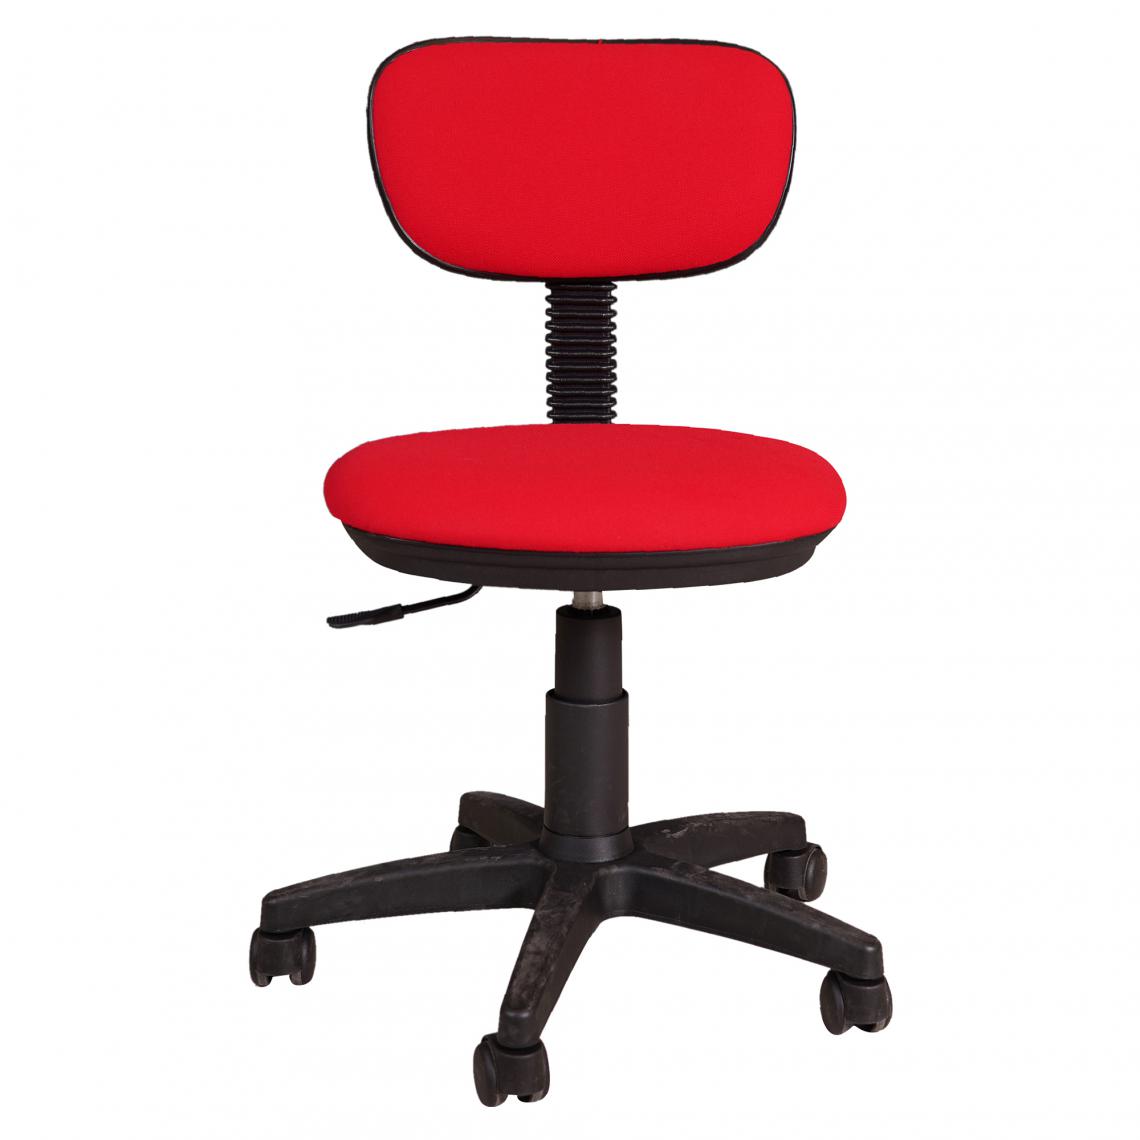 Alter - Chaise de bureau sur roulettes, Chaise releveuse, Chaise rembourrée en tissu, 58x53h77 / 87 cm, Couleur rouge - Chaises